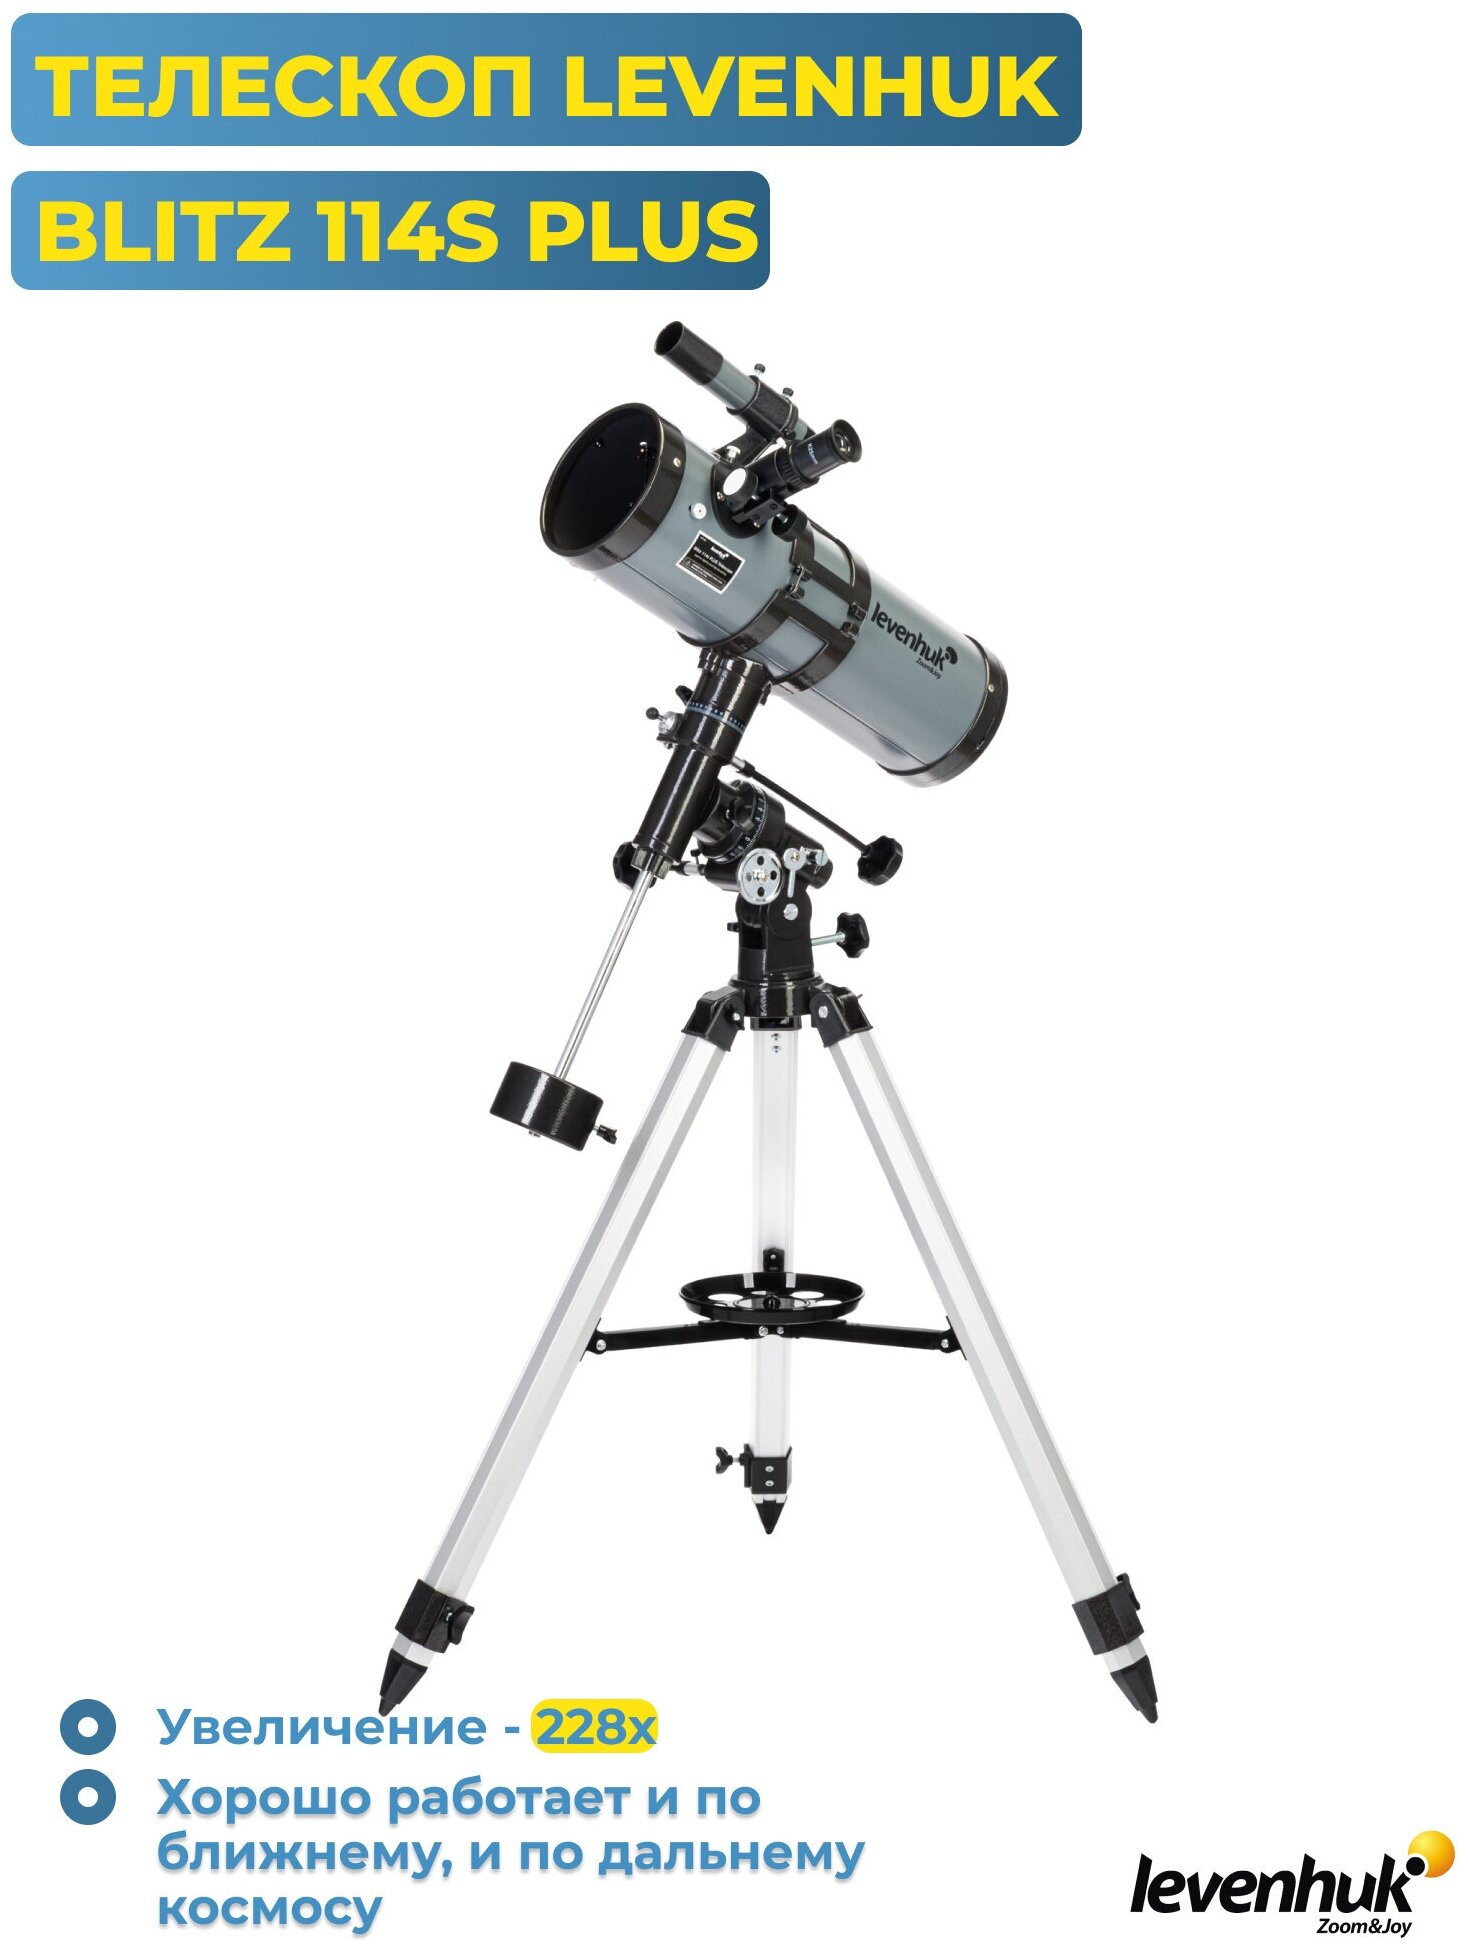 Телескоп Levenhuk Blitz 114s Plus рефлектор d114 fl500мм 228x серый/черный - фото №8